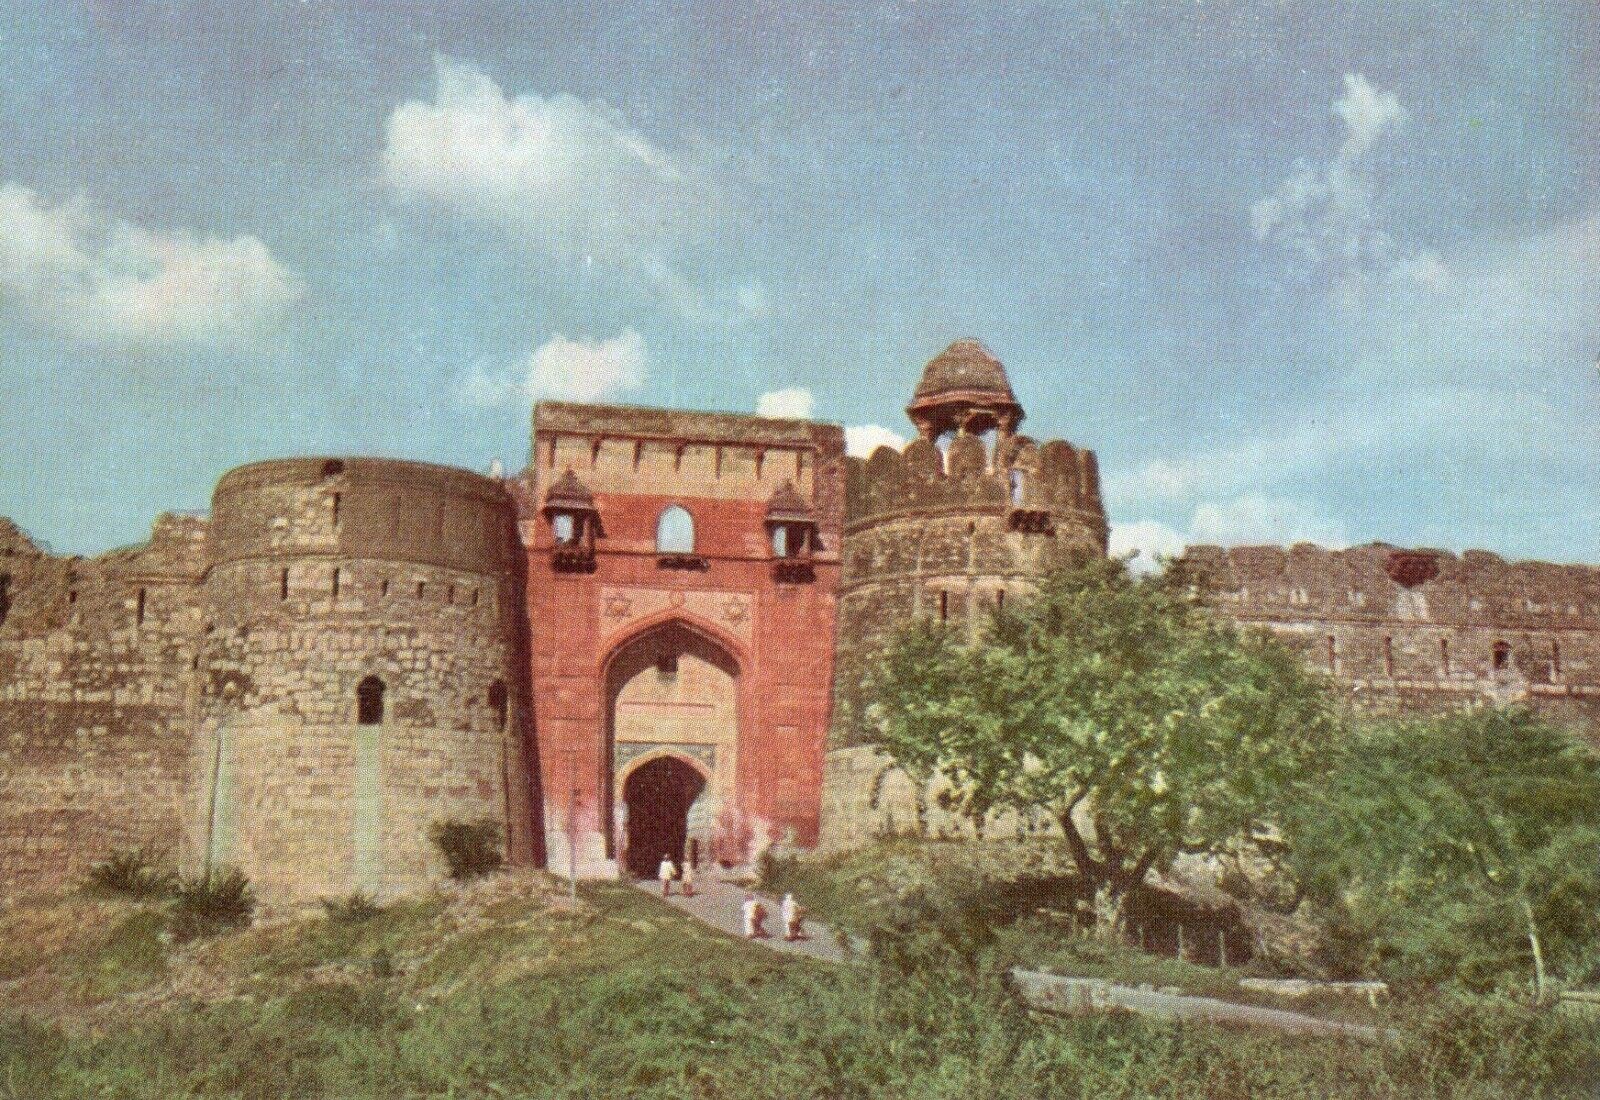 Purana Qila (Old Fort) New Delhi India Postcard